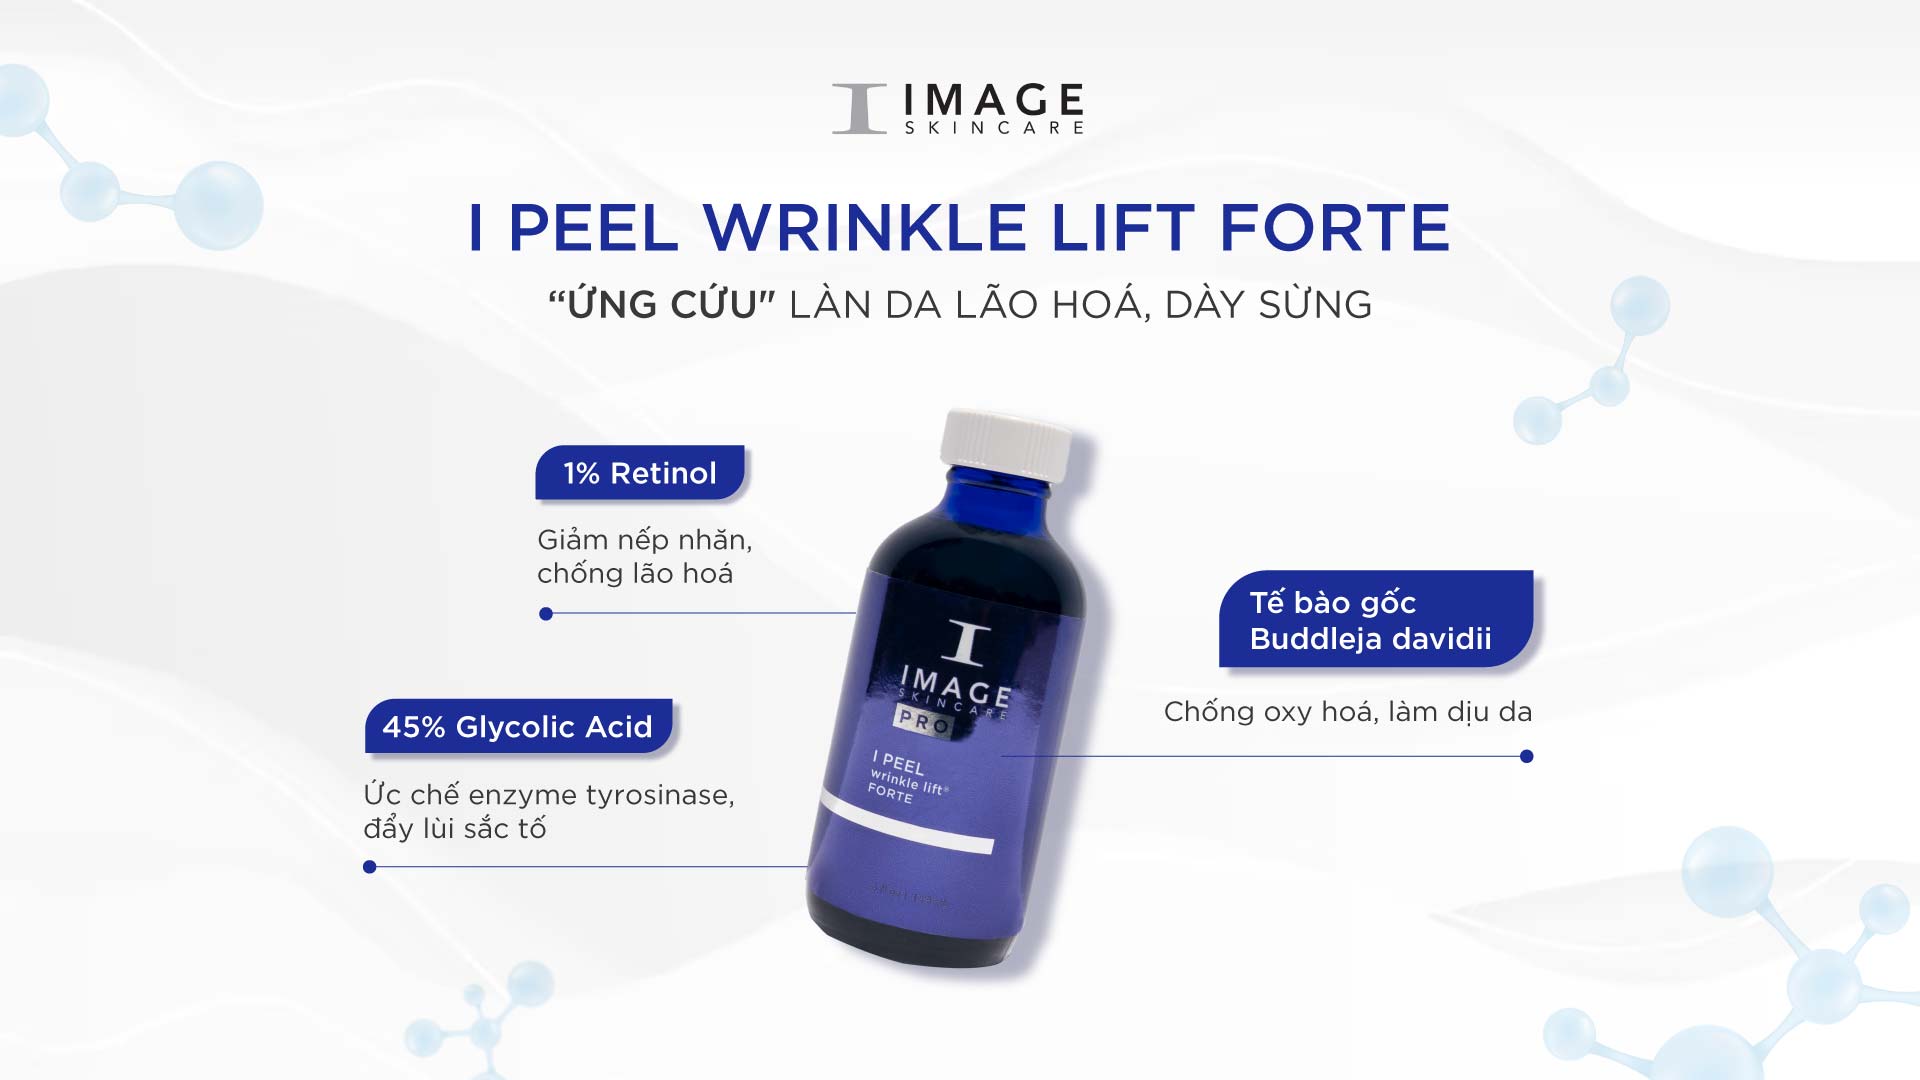 Image Skincare I Peel Wrinkle Lift Forte 